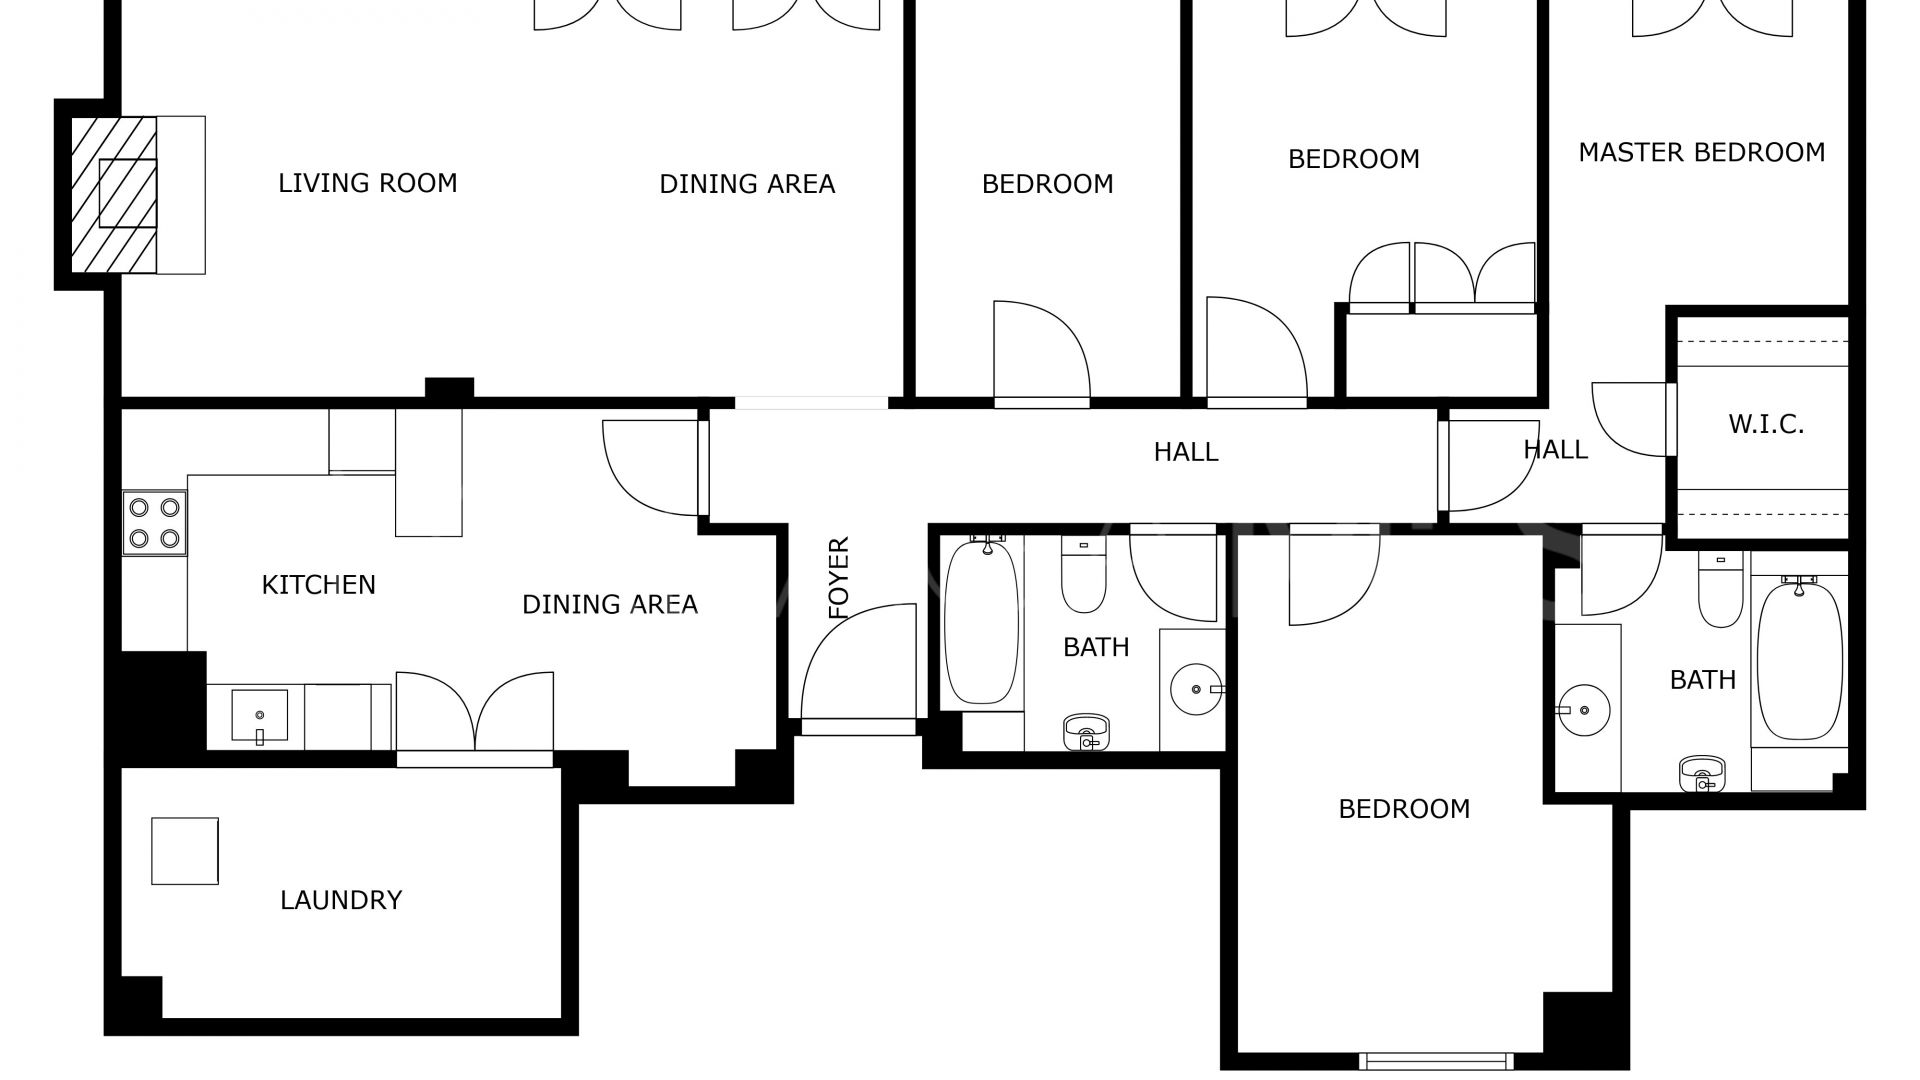 4 bedrooms apartment for sale in Fuengirola Puerto